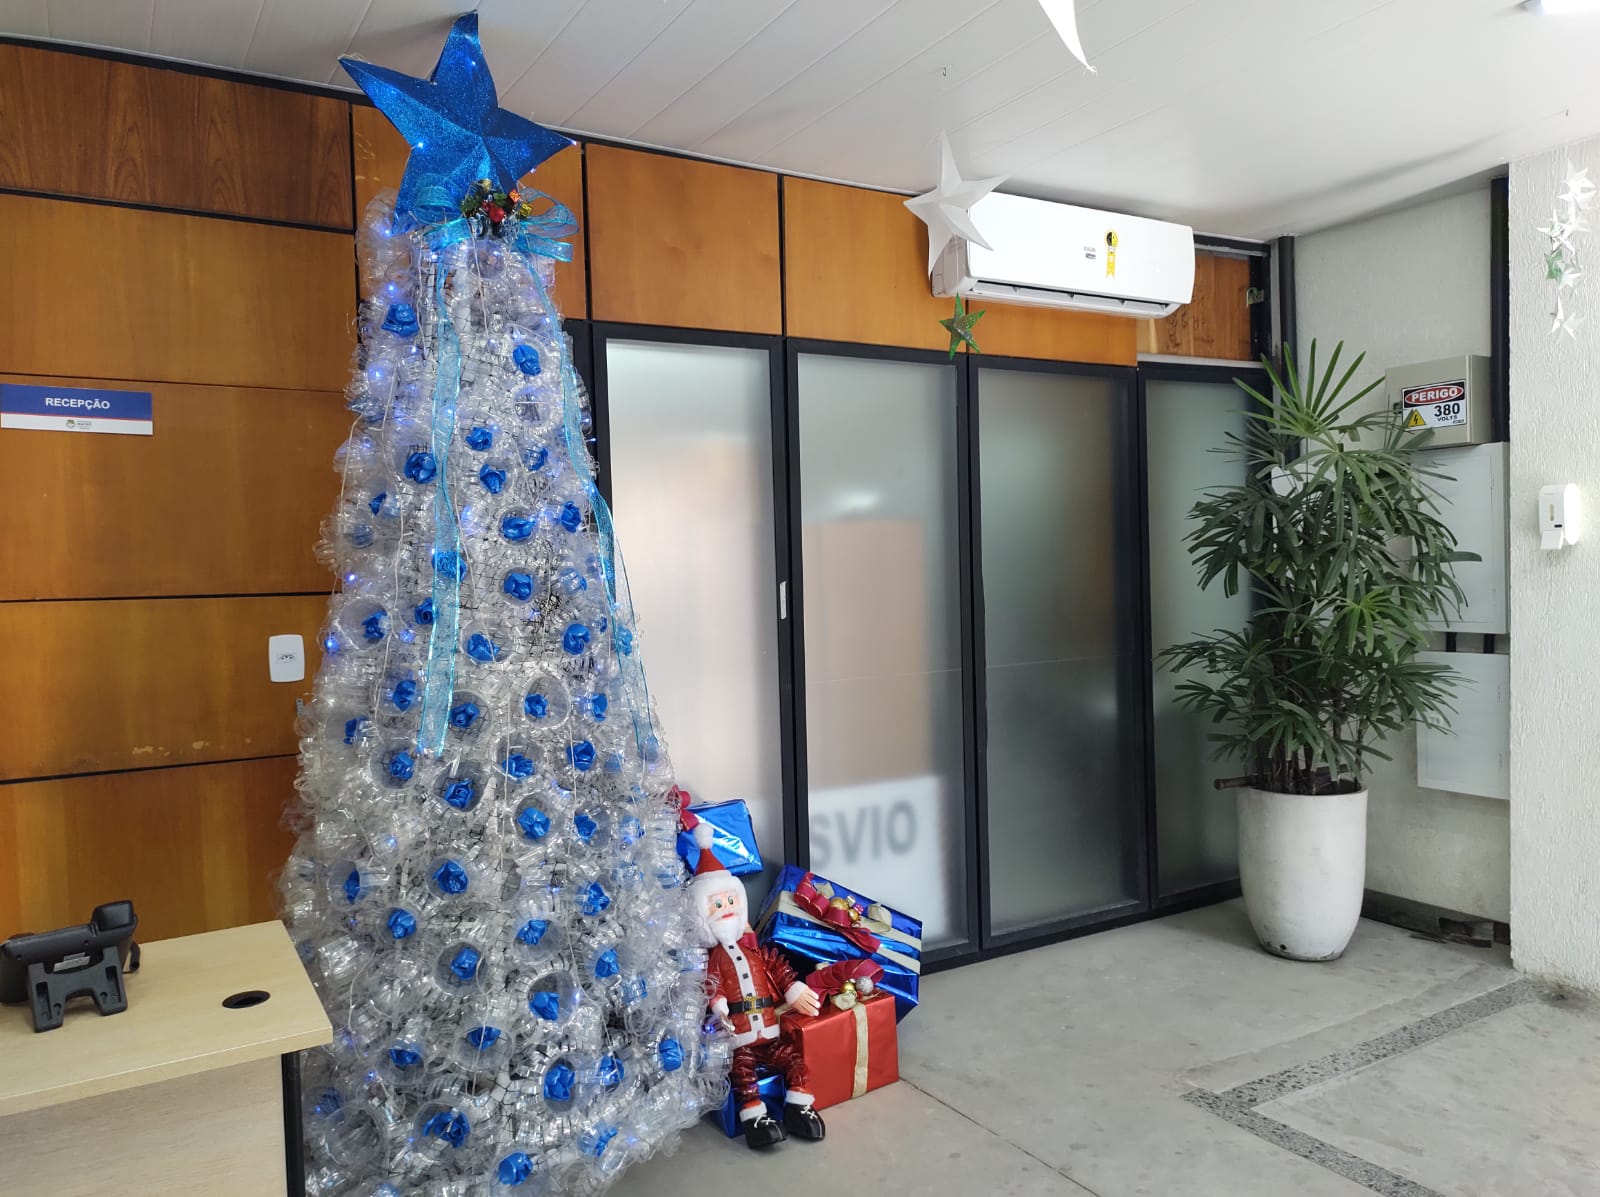 Decoração natalina da Sudes foi feita com materiais recicláveis. Foto: Ascom Sudes